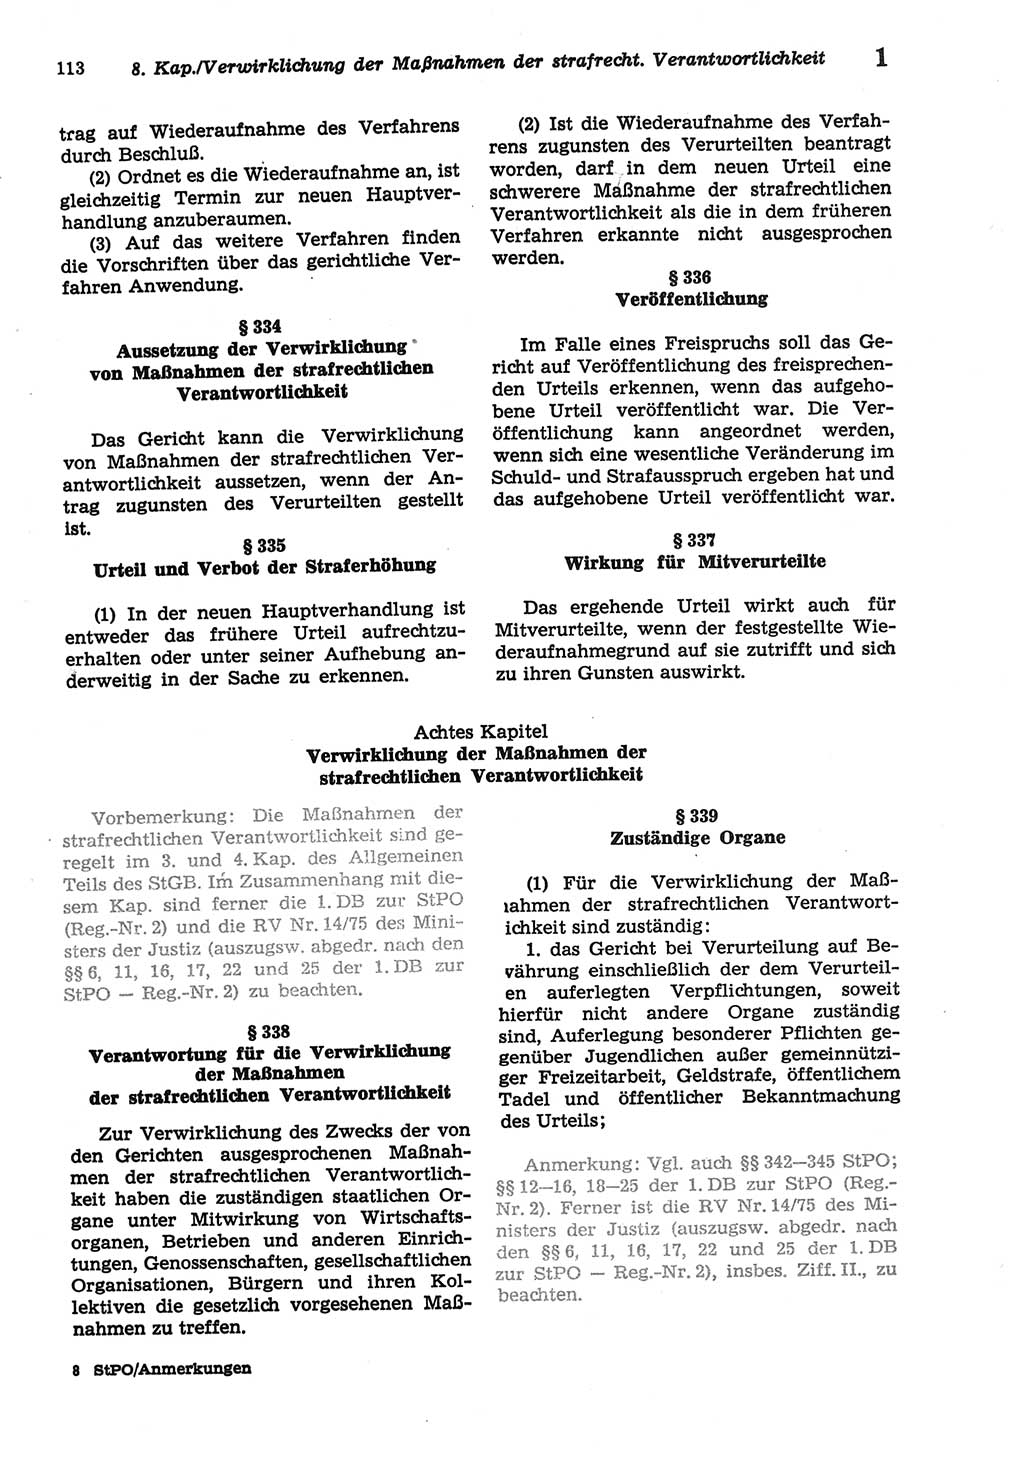 Strafprozeßordnung (StPO) der Deutschen Demokratischen Republik (DDR) sowie angrenzende Gesetze und Bestimmungen 1977, Seite 113 (StPO DDR Ges. Best. 1977, S. 113)